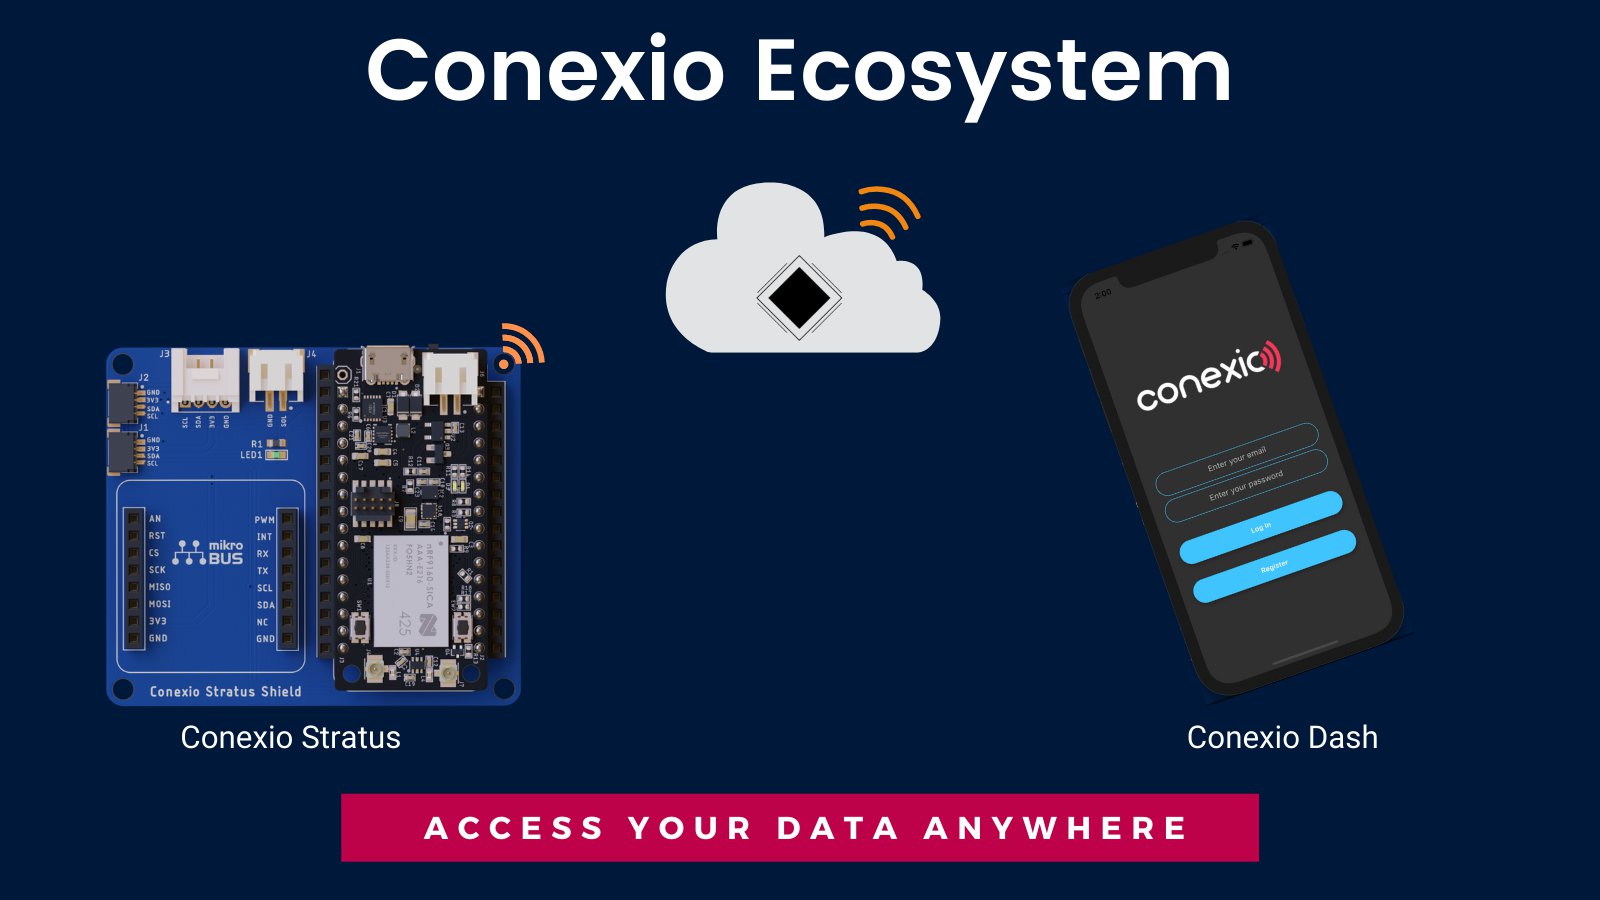 The Conexio ecosystem